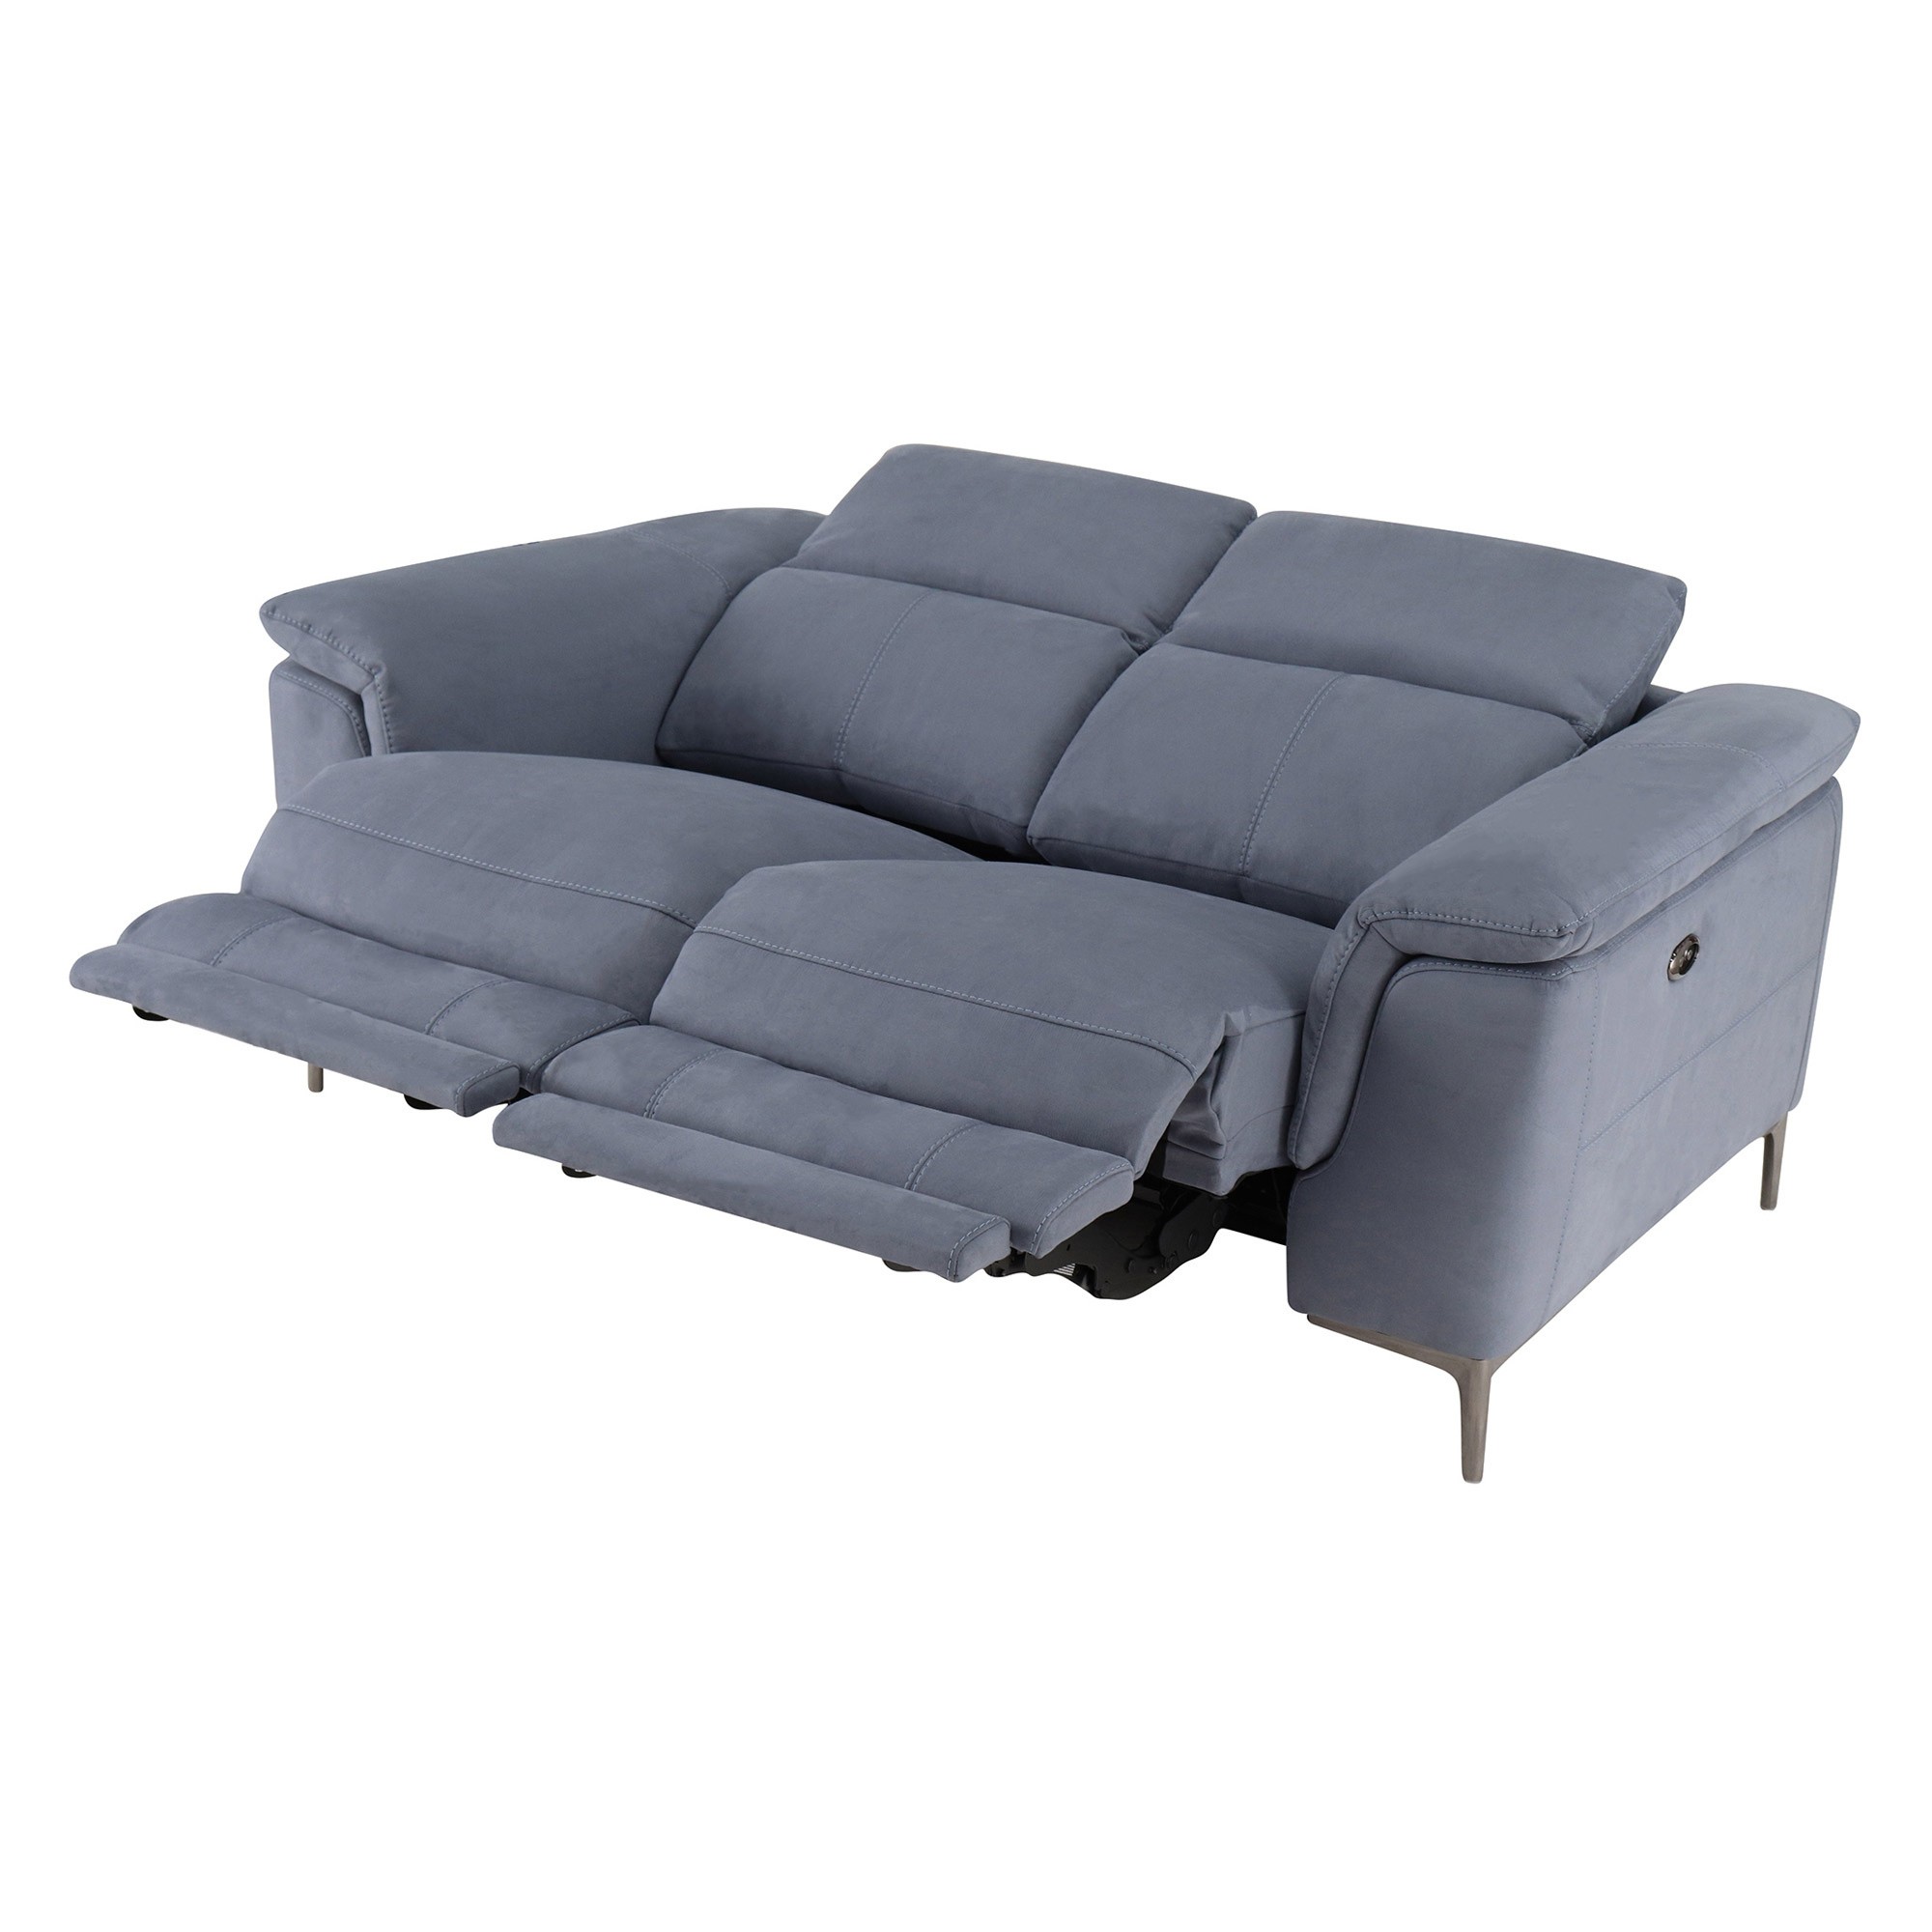 Rimini pacific blue small fabric electric recliner sofa 2